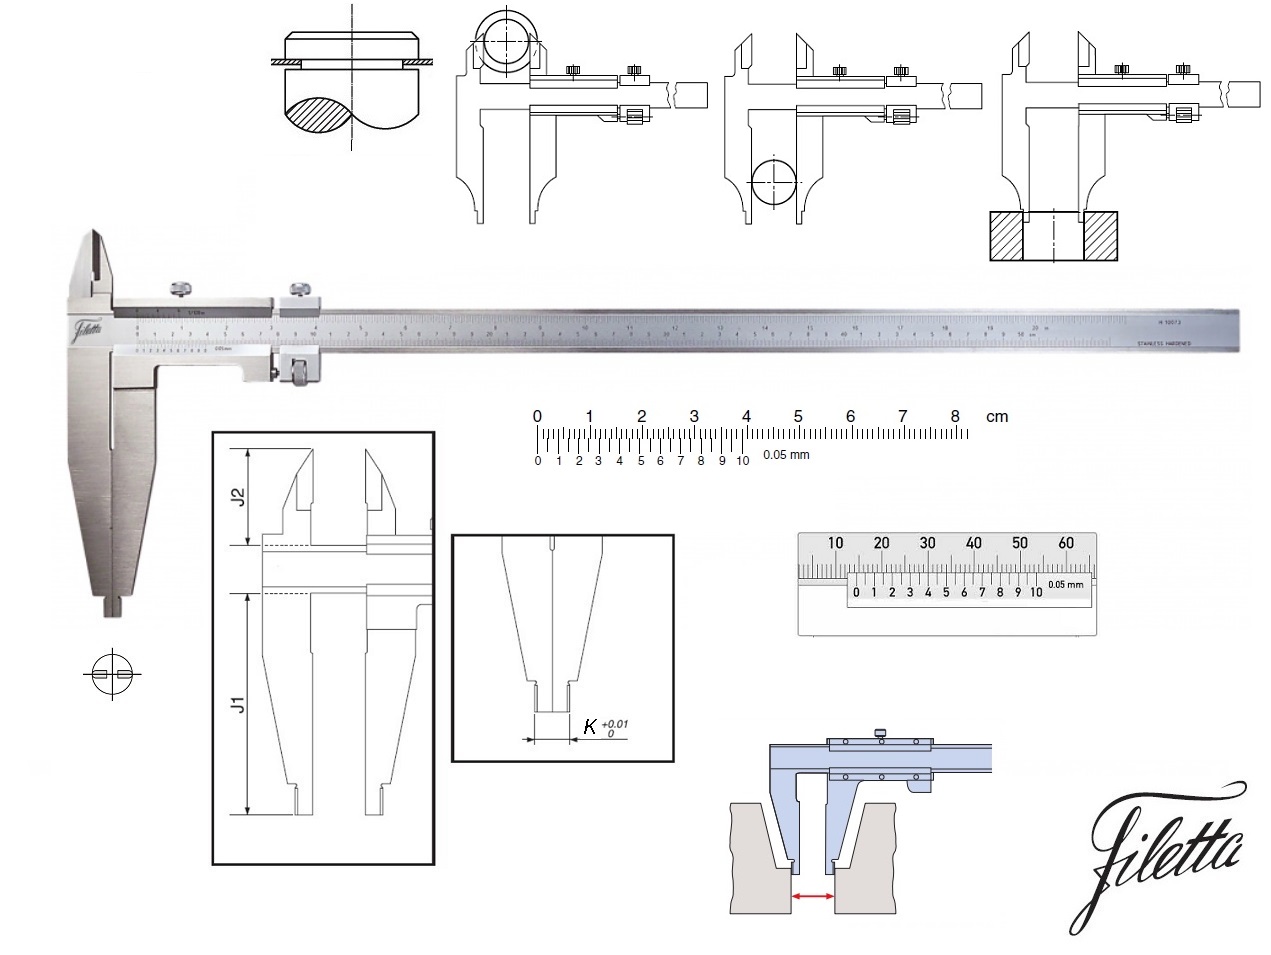 Posuvné měřítko Filetta 0-750 mm, čelisti 150 mm, s měřicími nožíky pro vnější měření